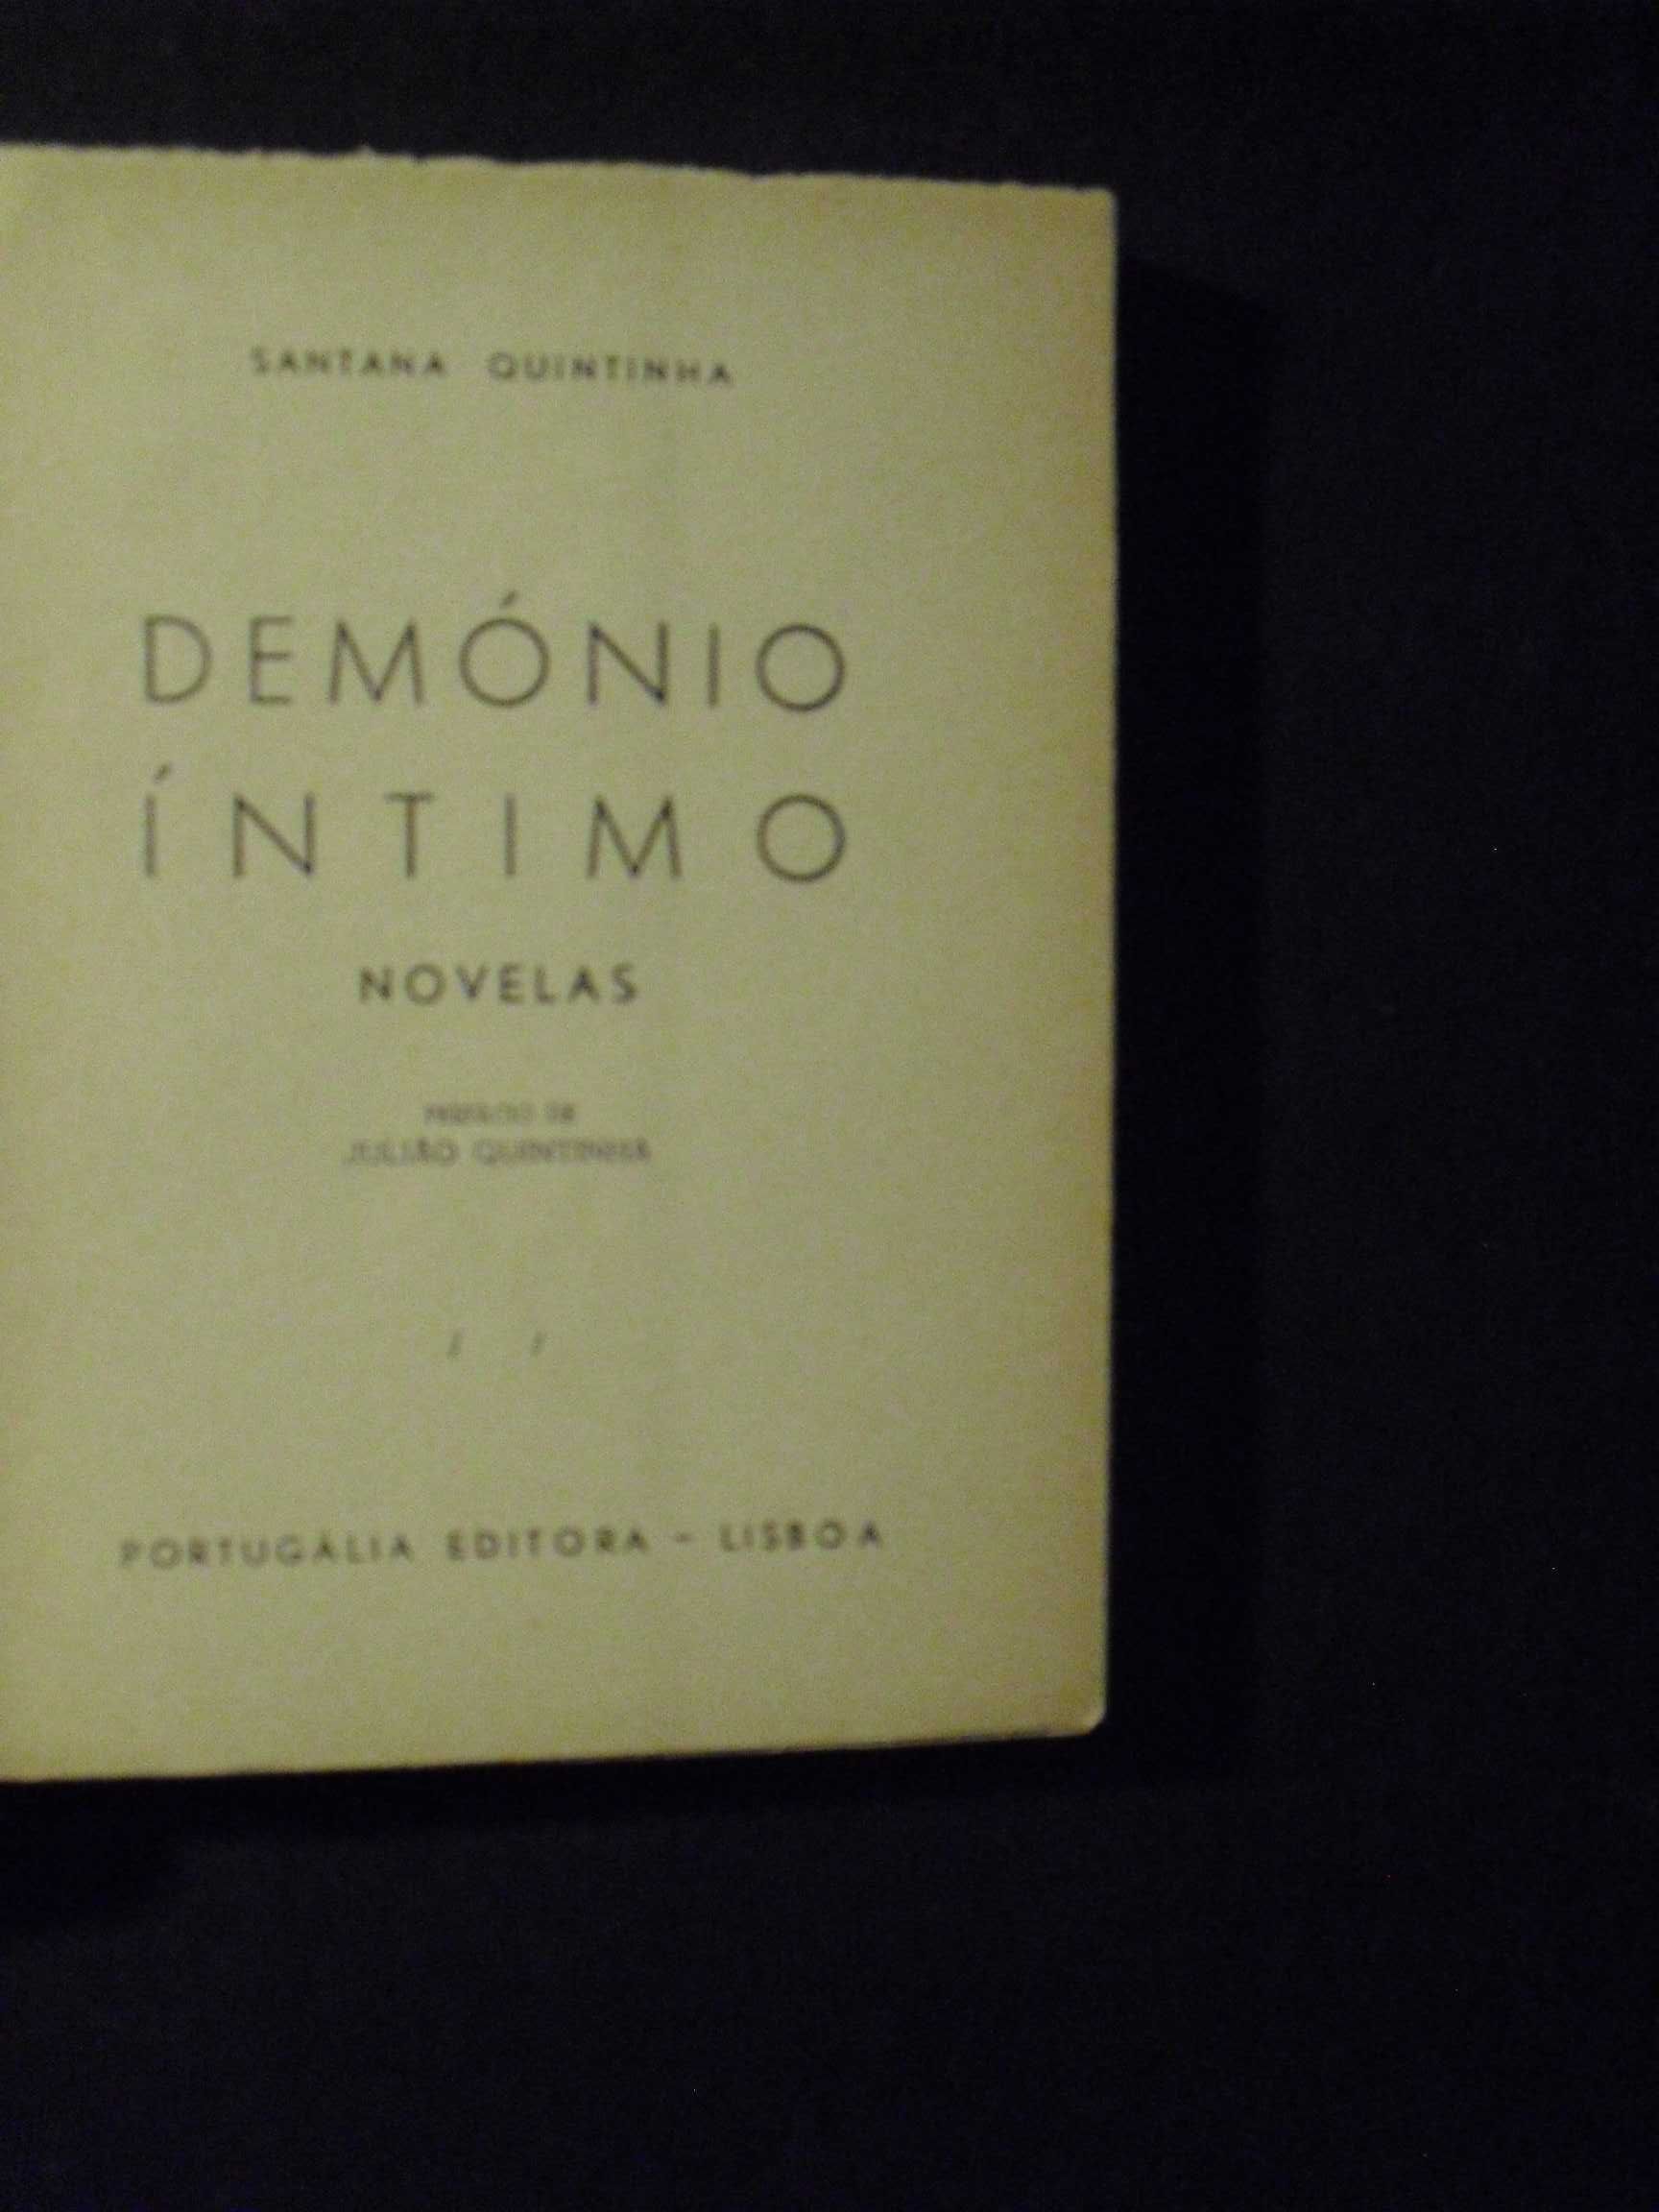 Quintinha (Santana);Demónio Íntimo,Novelas,